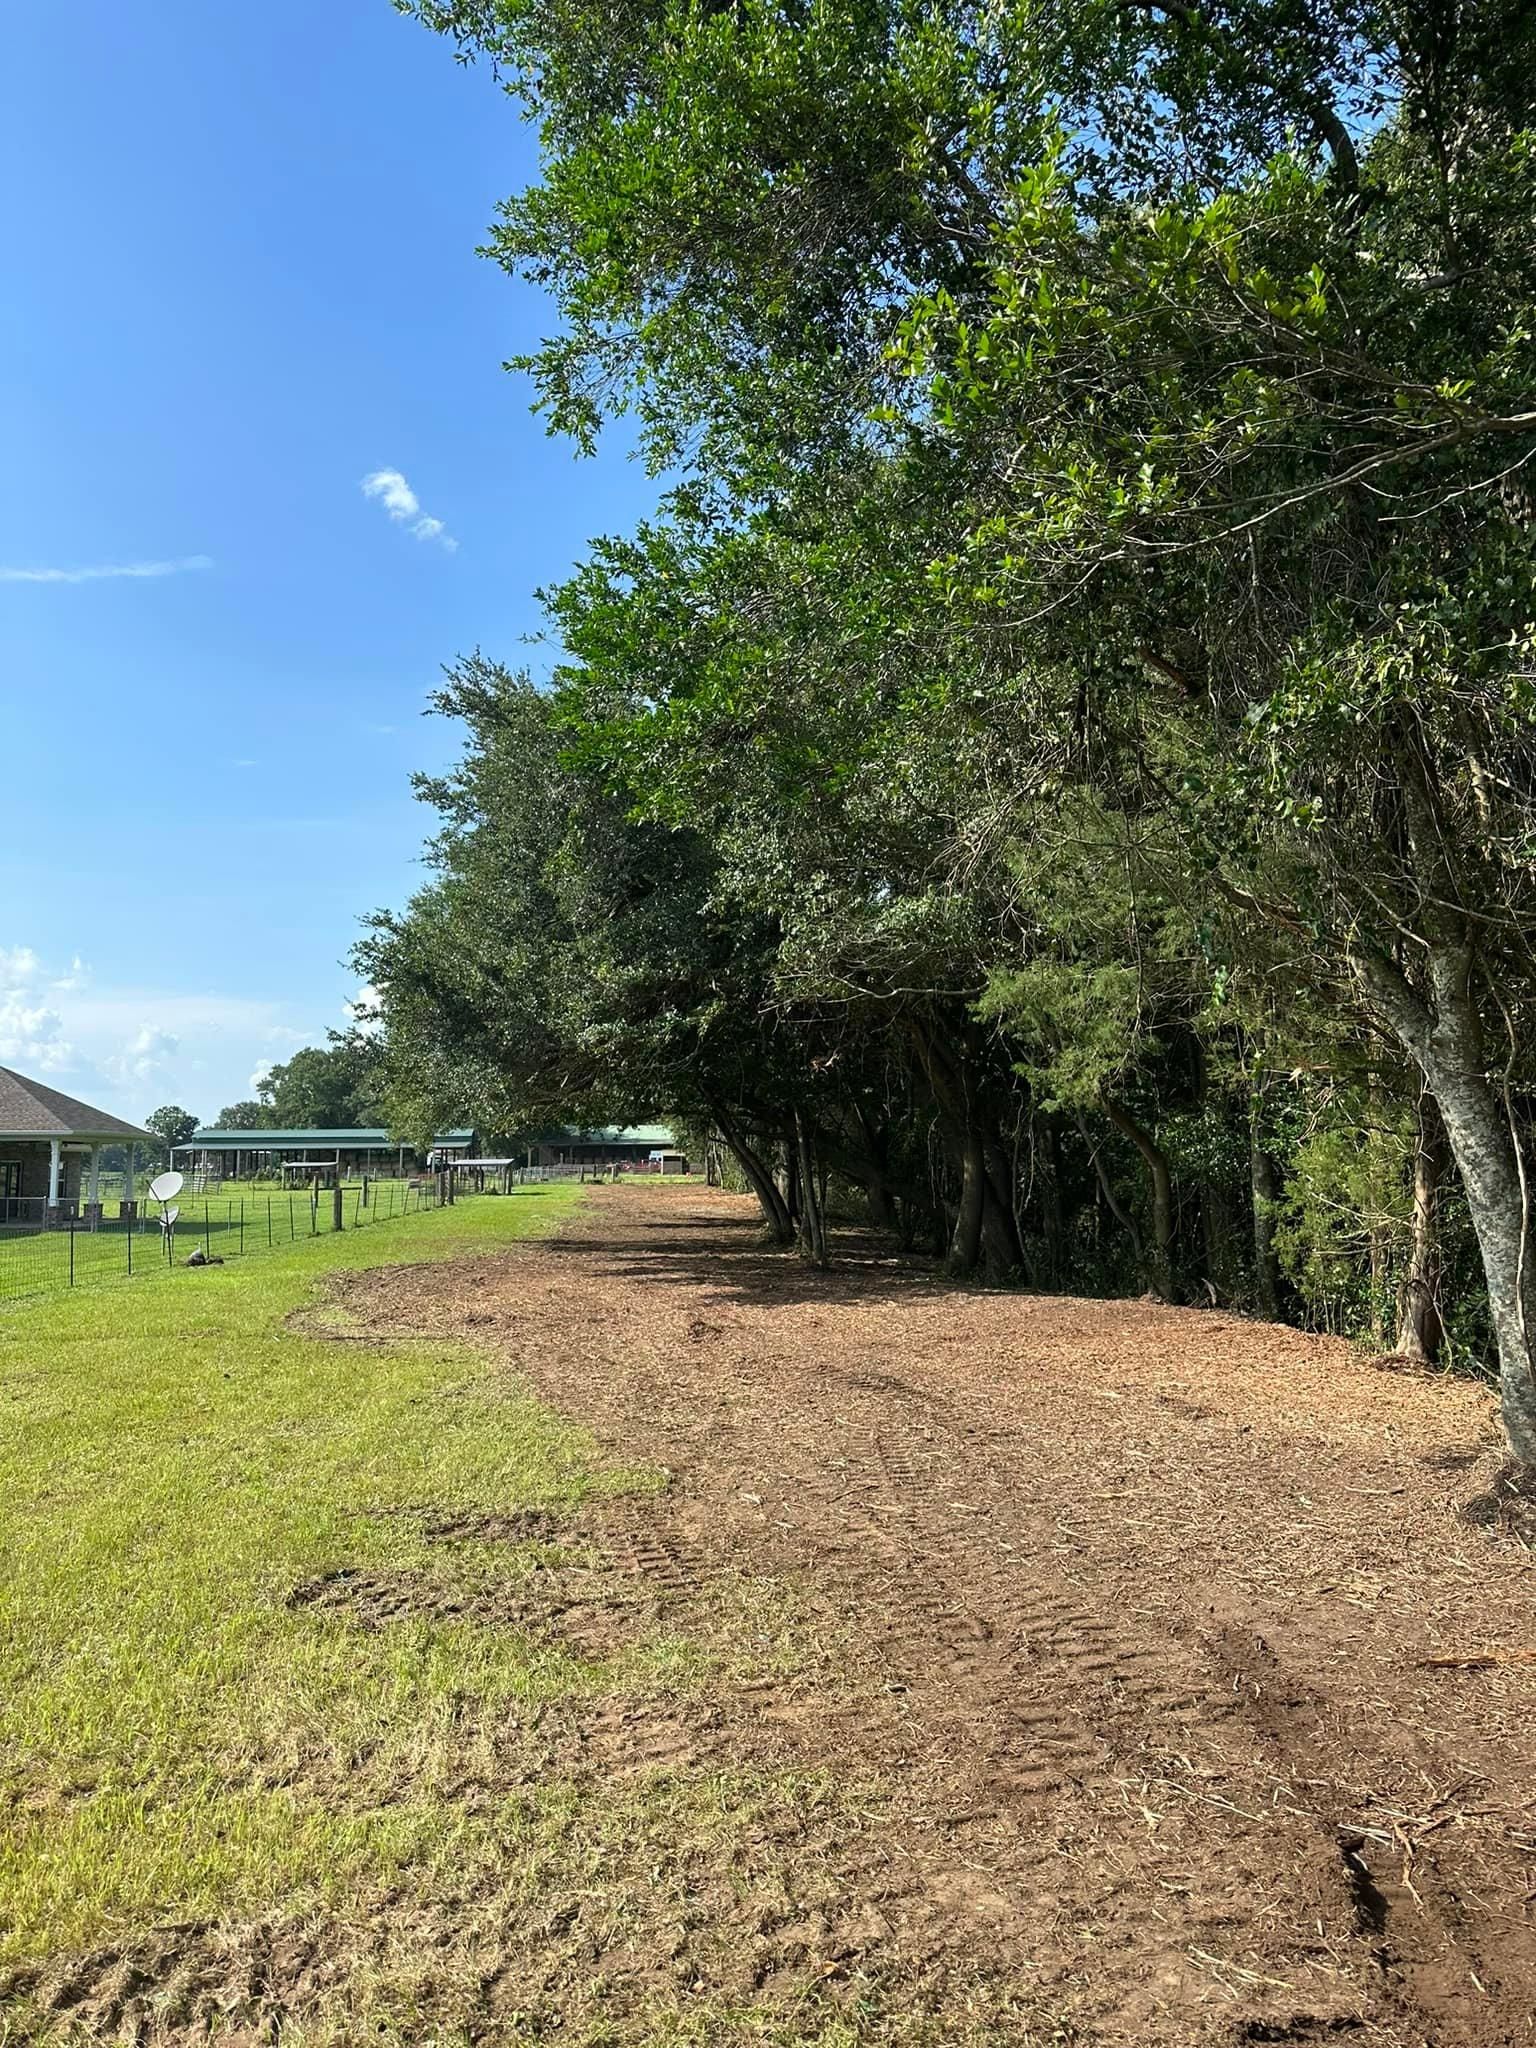  for White’s Land Maintenance in Milton,, FL